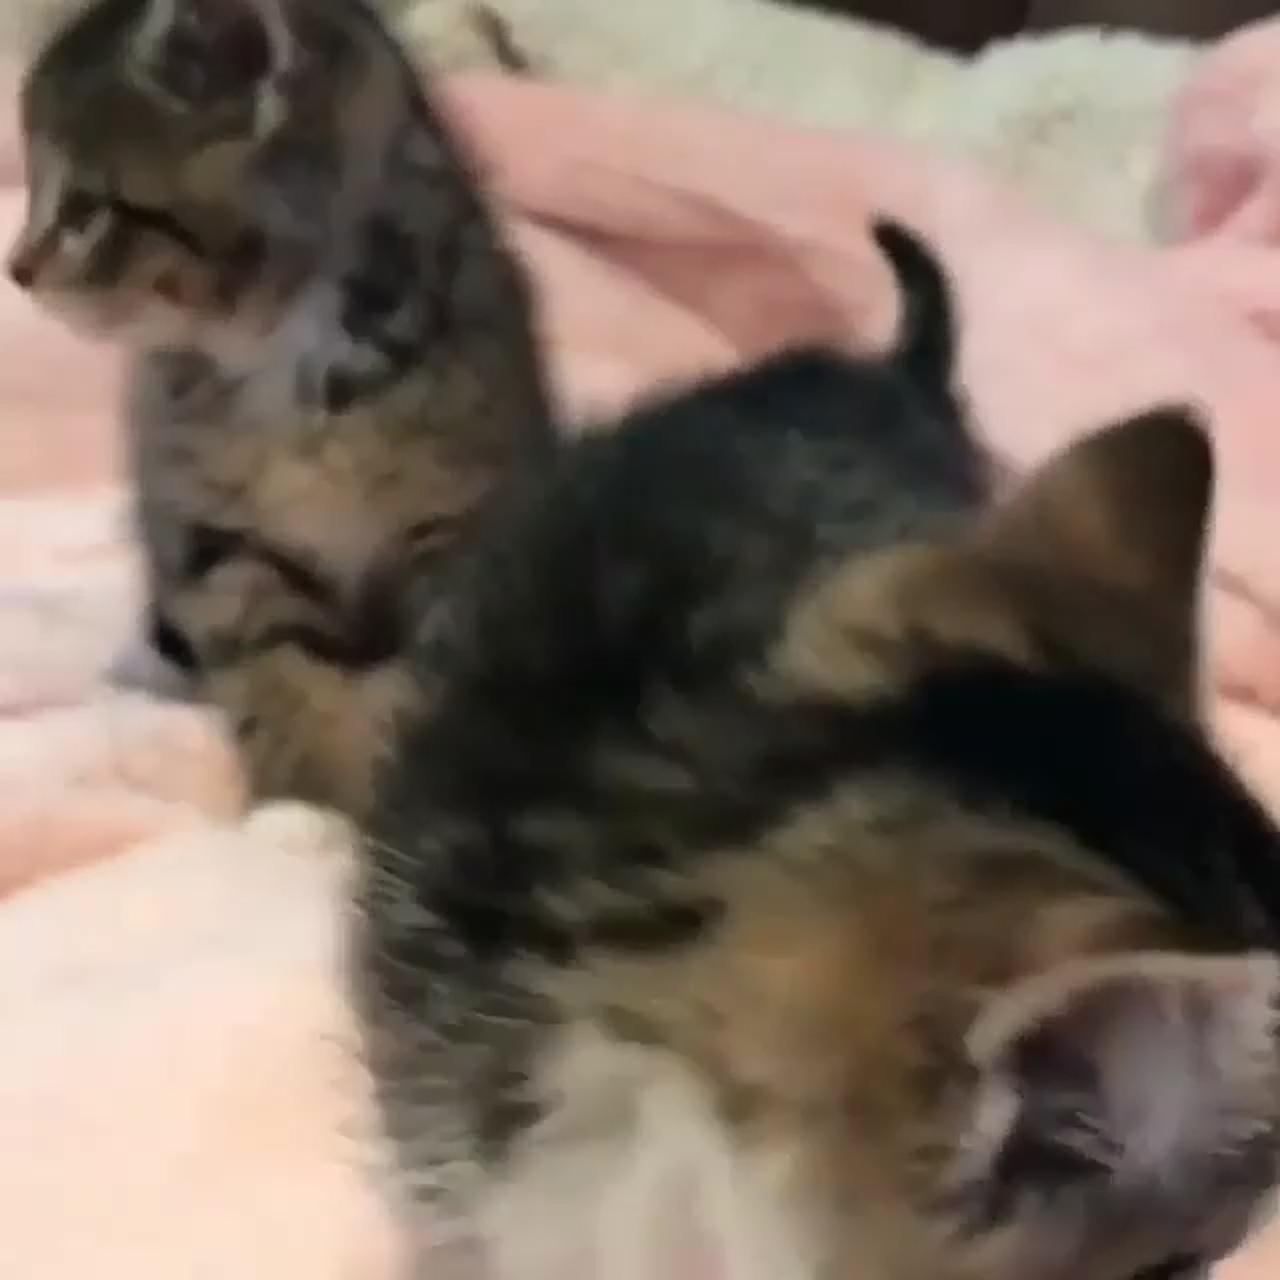 Cute kitten pair; cute little kittens